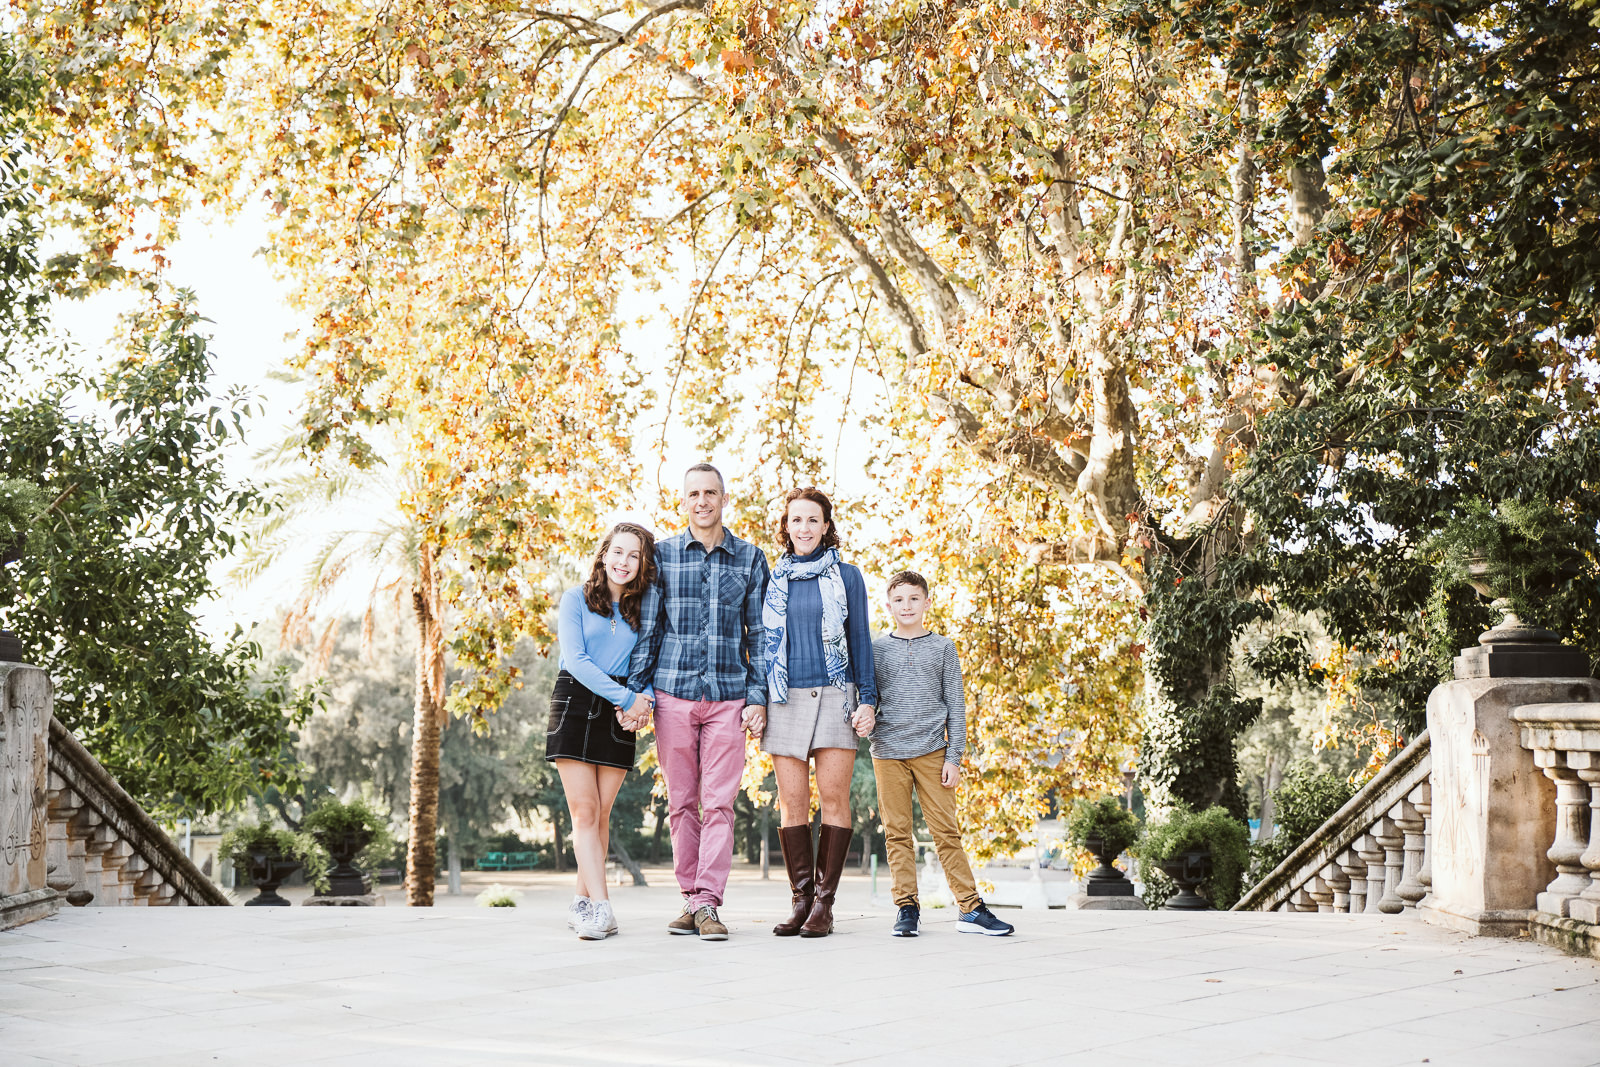 Family photo session in Ciutadella Park and El Borne district